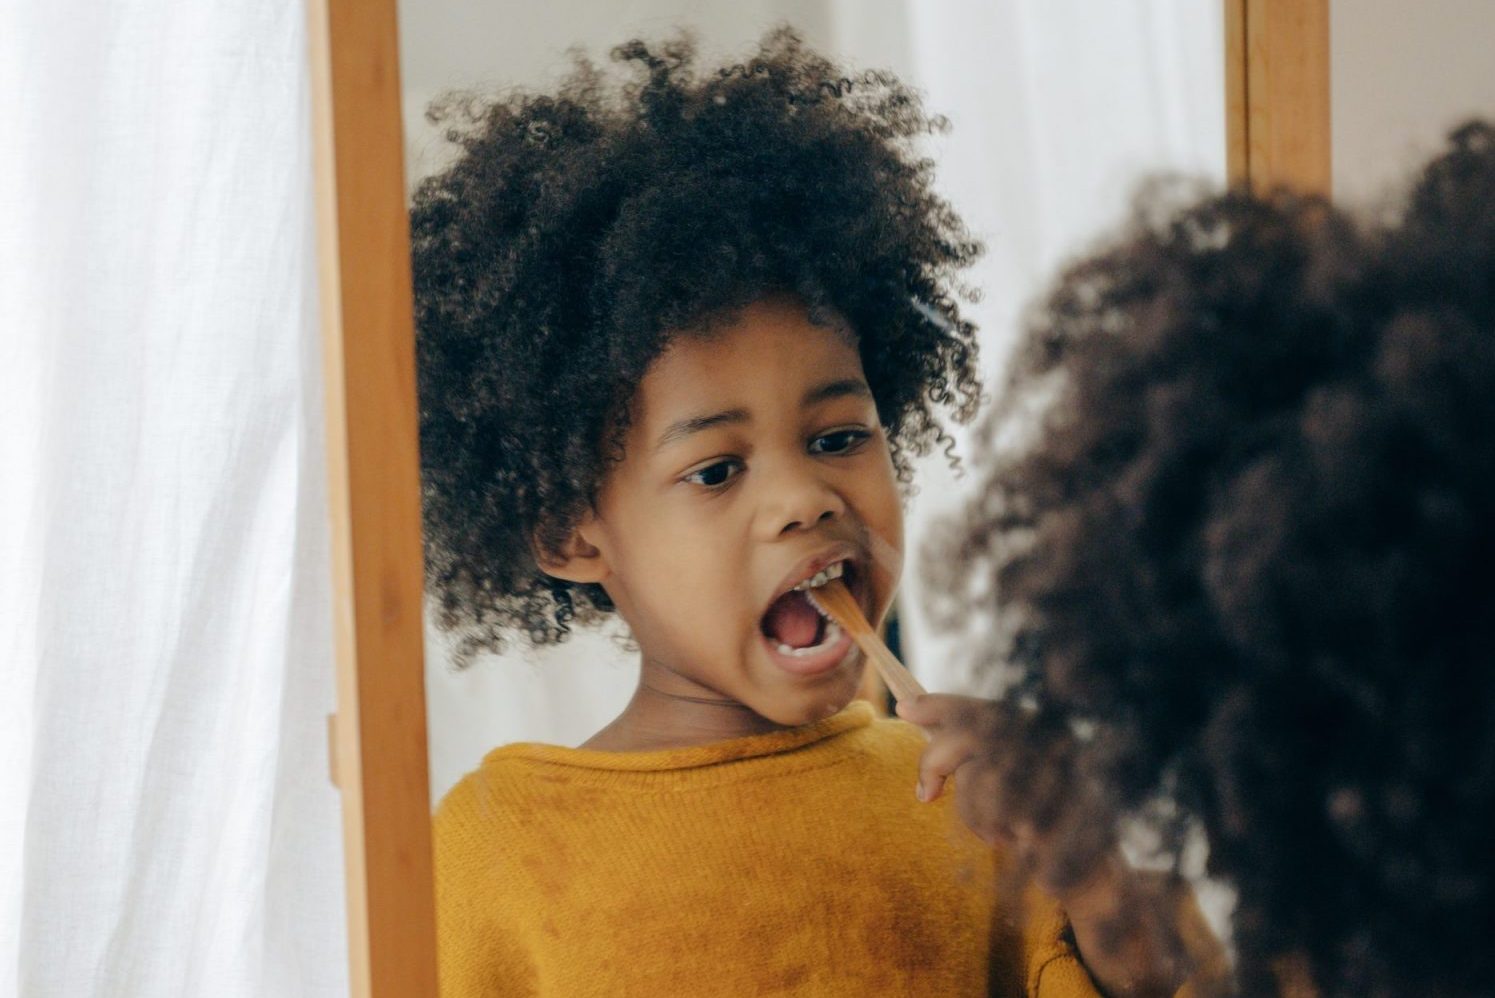 kid brushing teeth in mirror